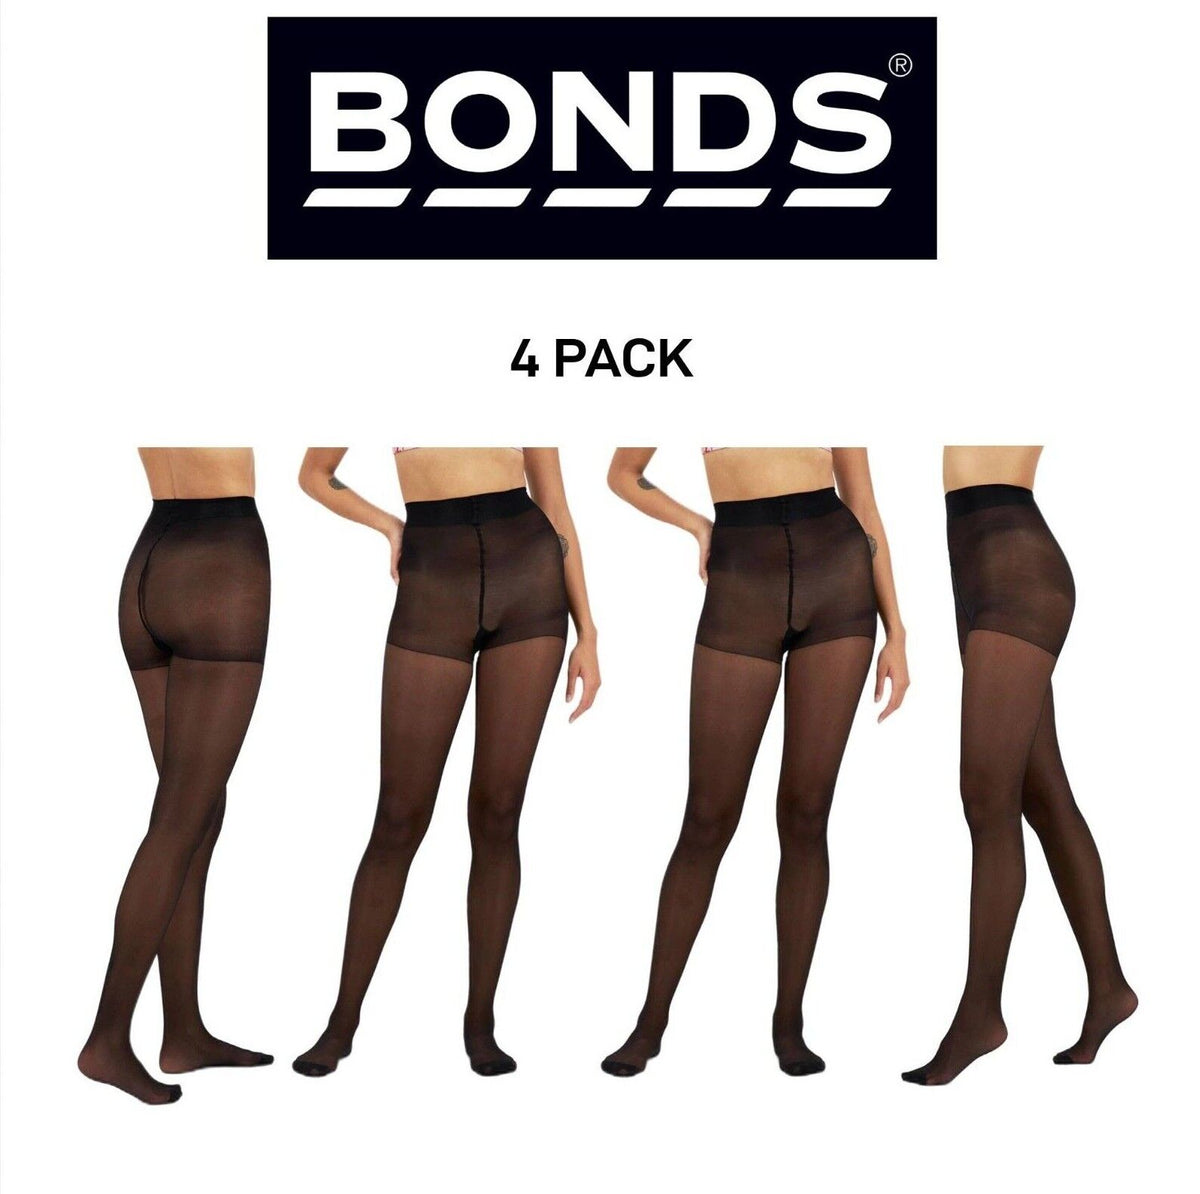 Bonds Womens Comfy Tops Sheer Tights Innovative Comfy Top 4 Pack L79571